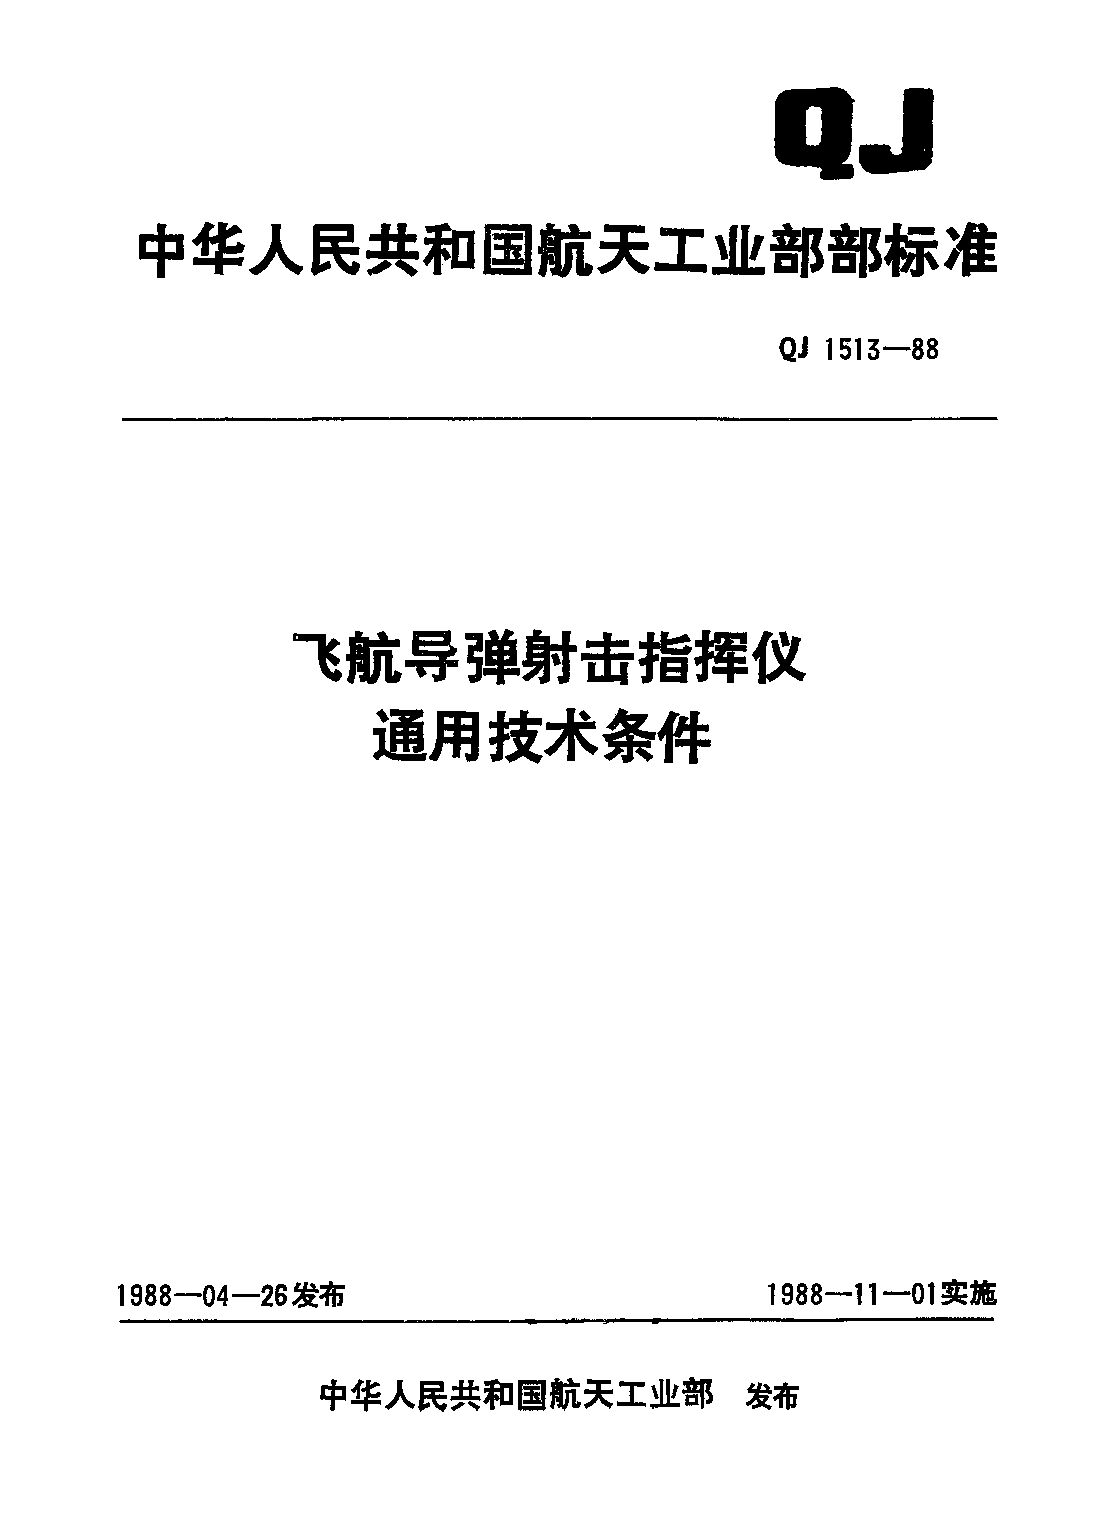 QJ 1513-1988封面图